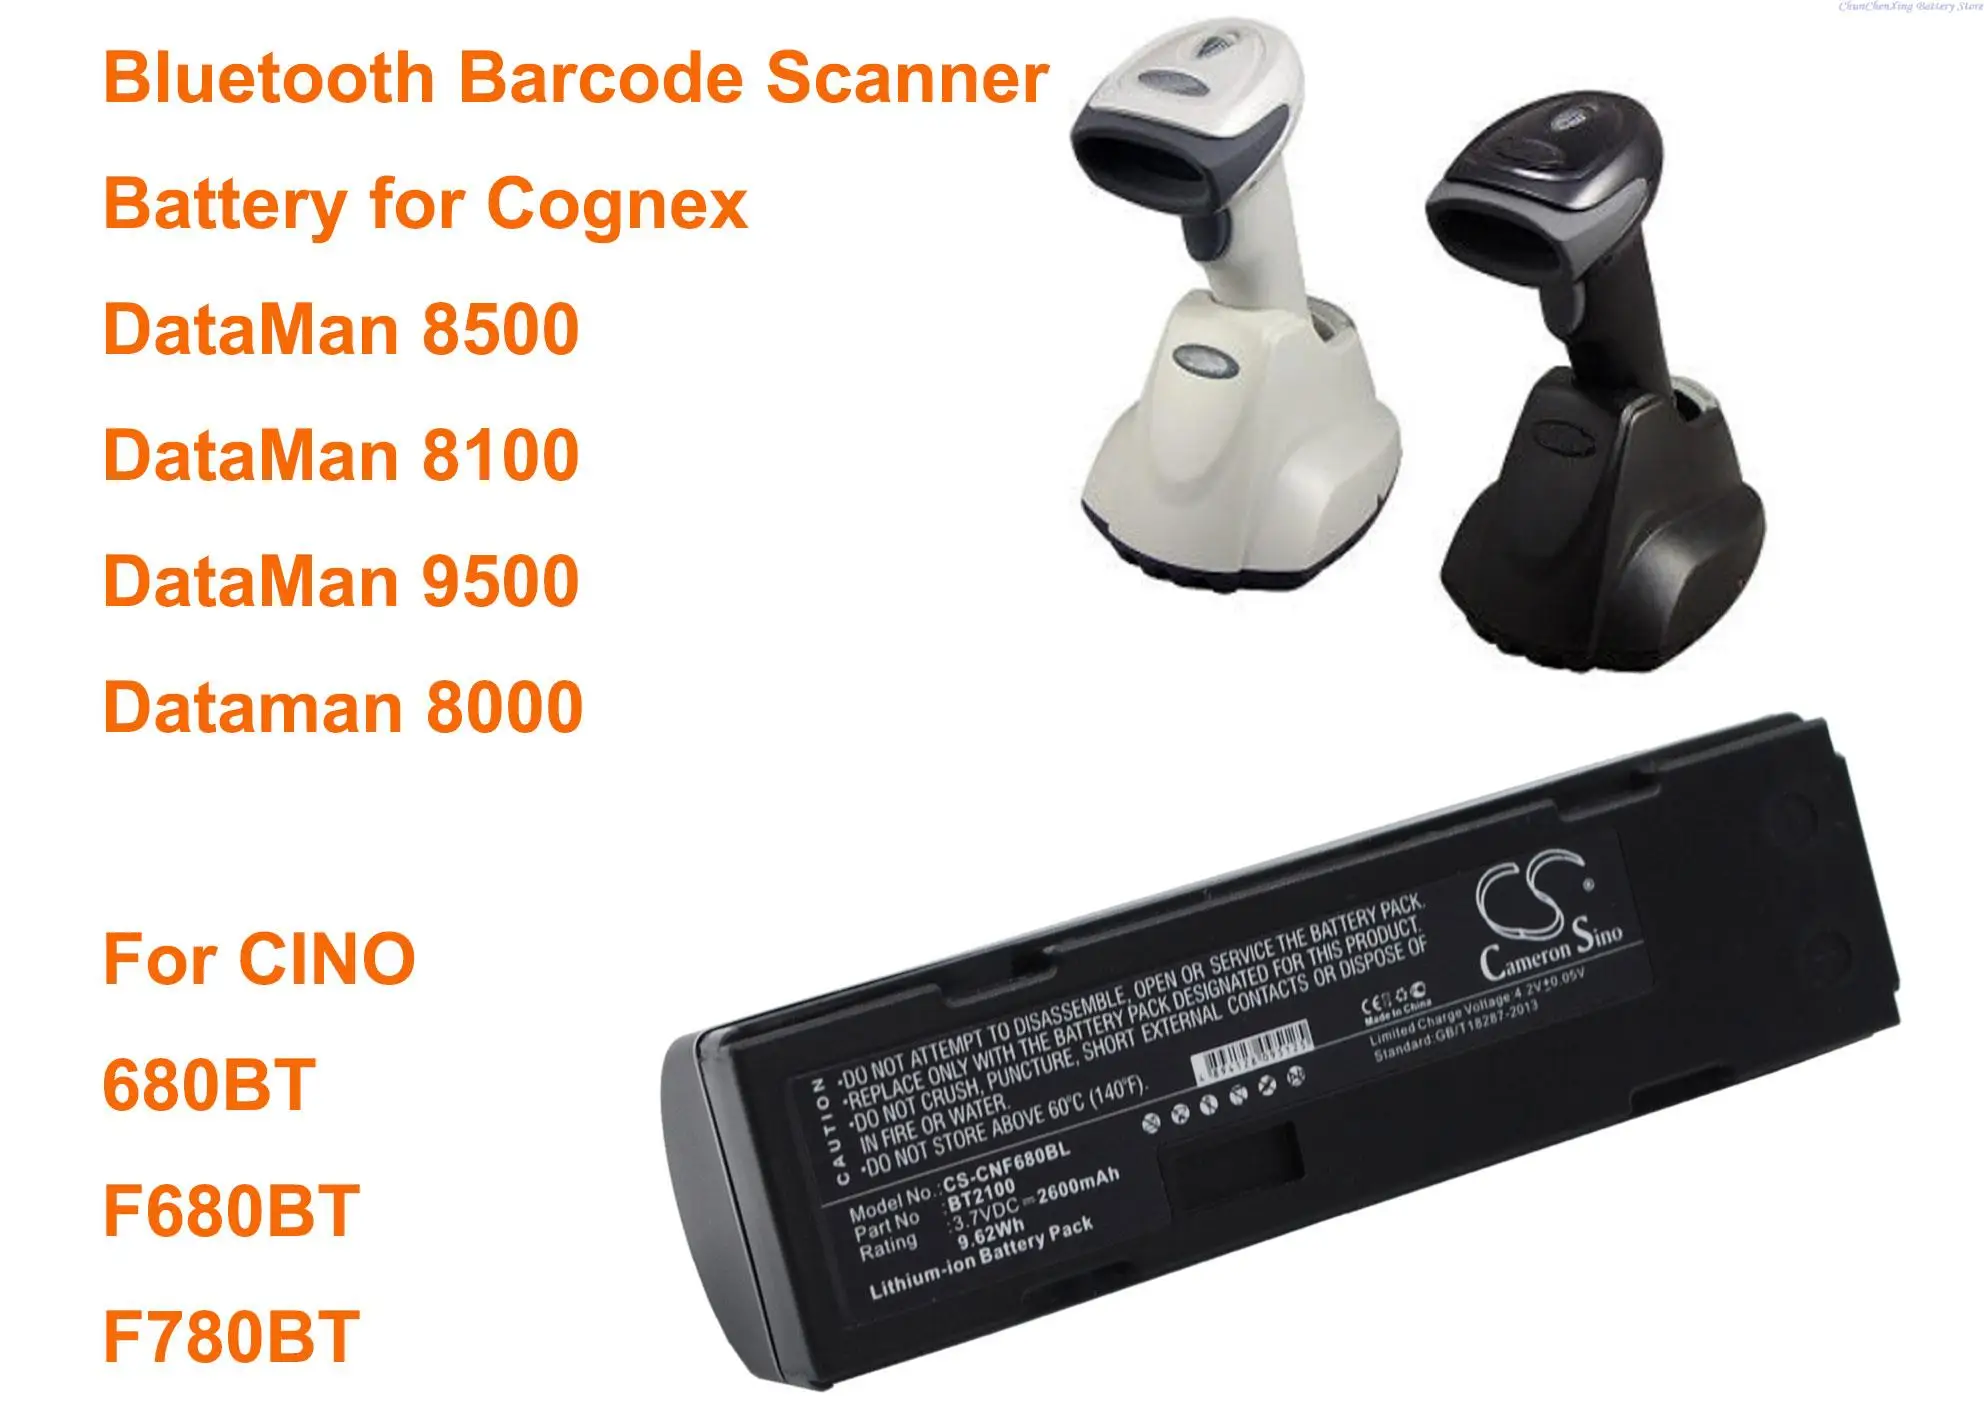 

Cameron Sino 2600mAh Barcode Scanner Battery BT2100 for CINO 680BT, F680BT, F780BT, For Cognex DataMan 8500, 8100, 9500, 8000